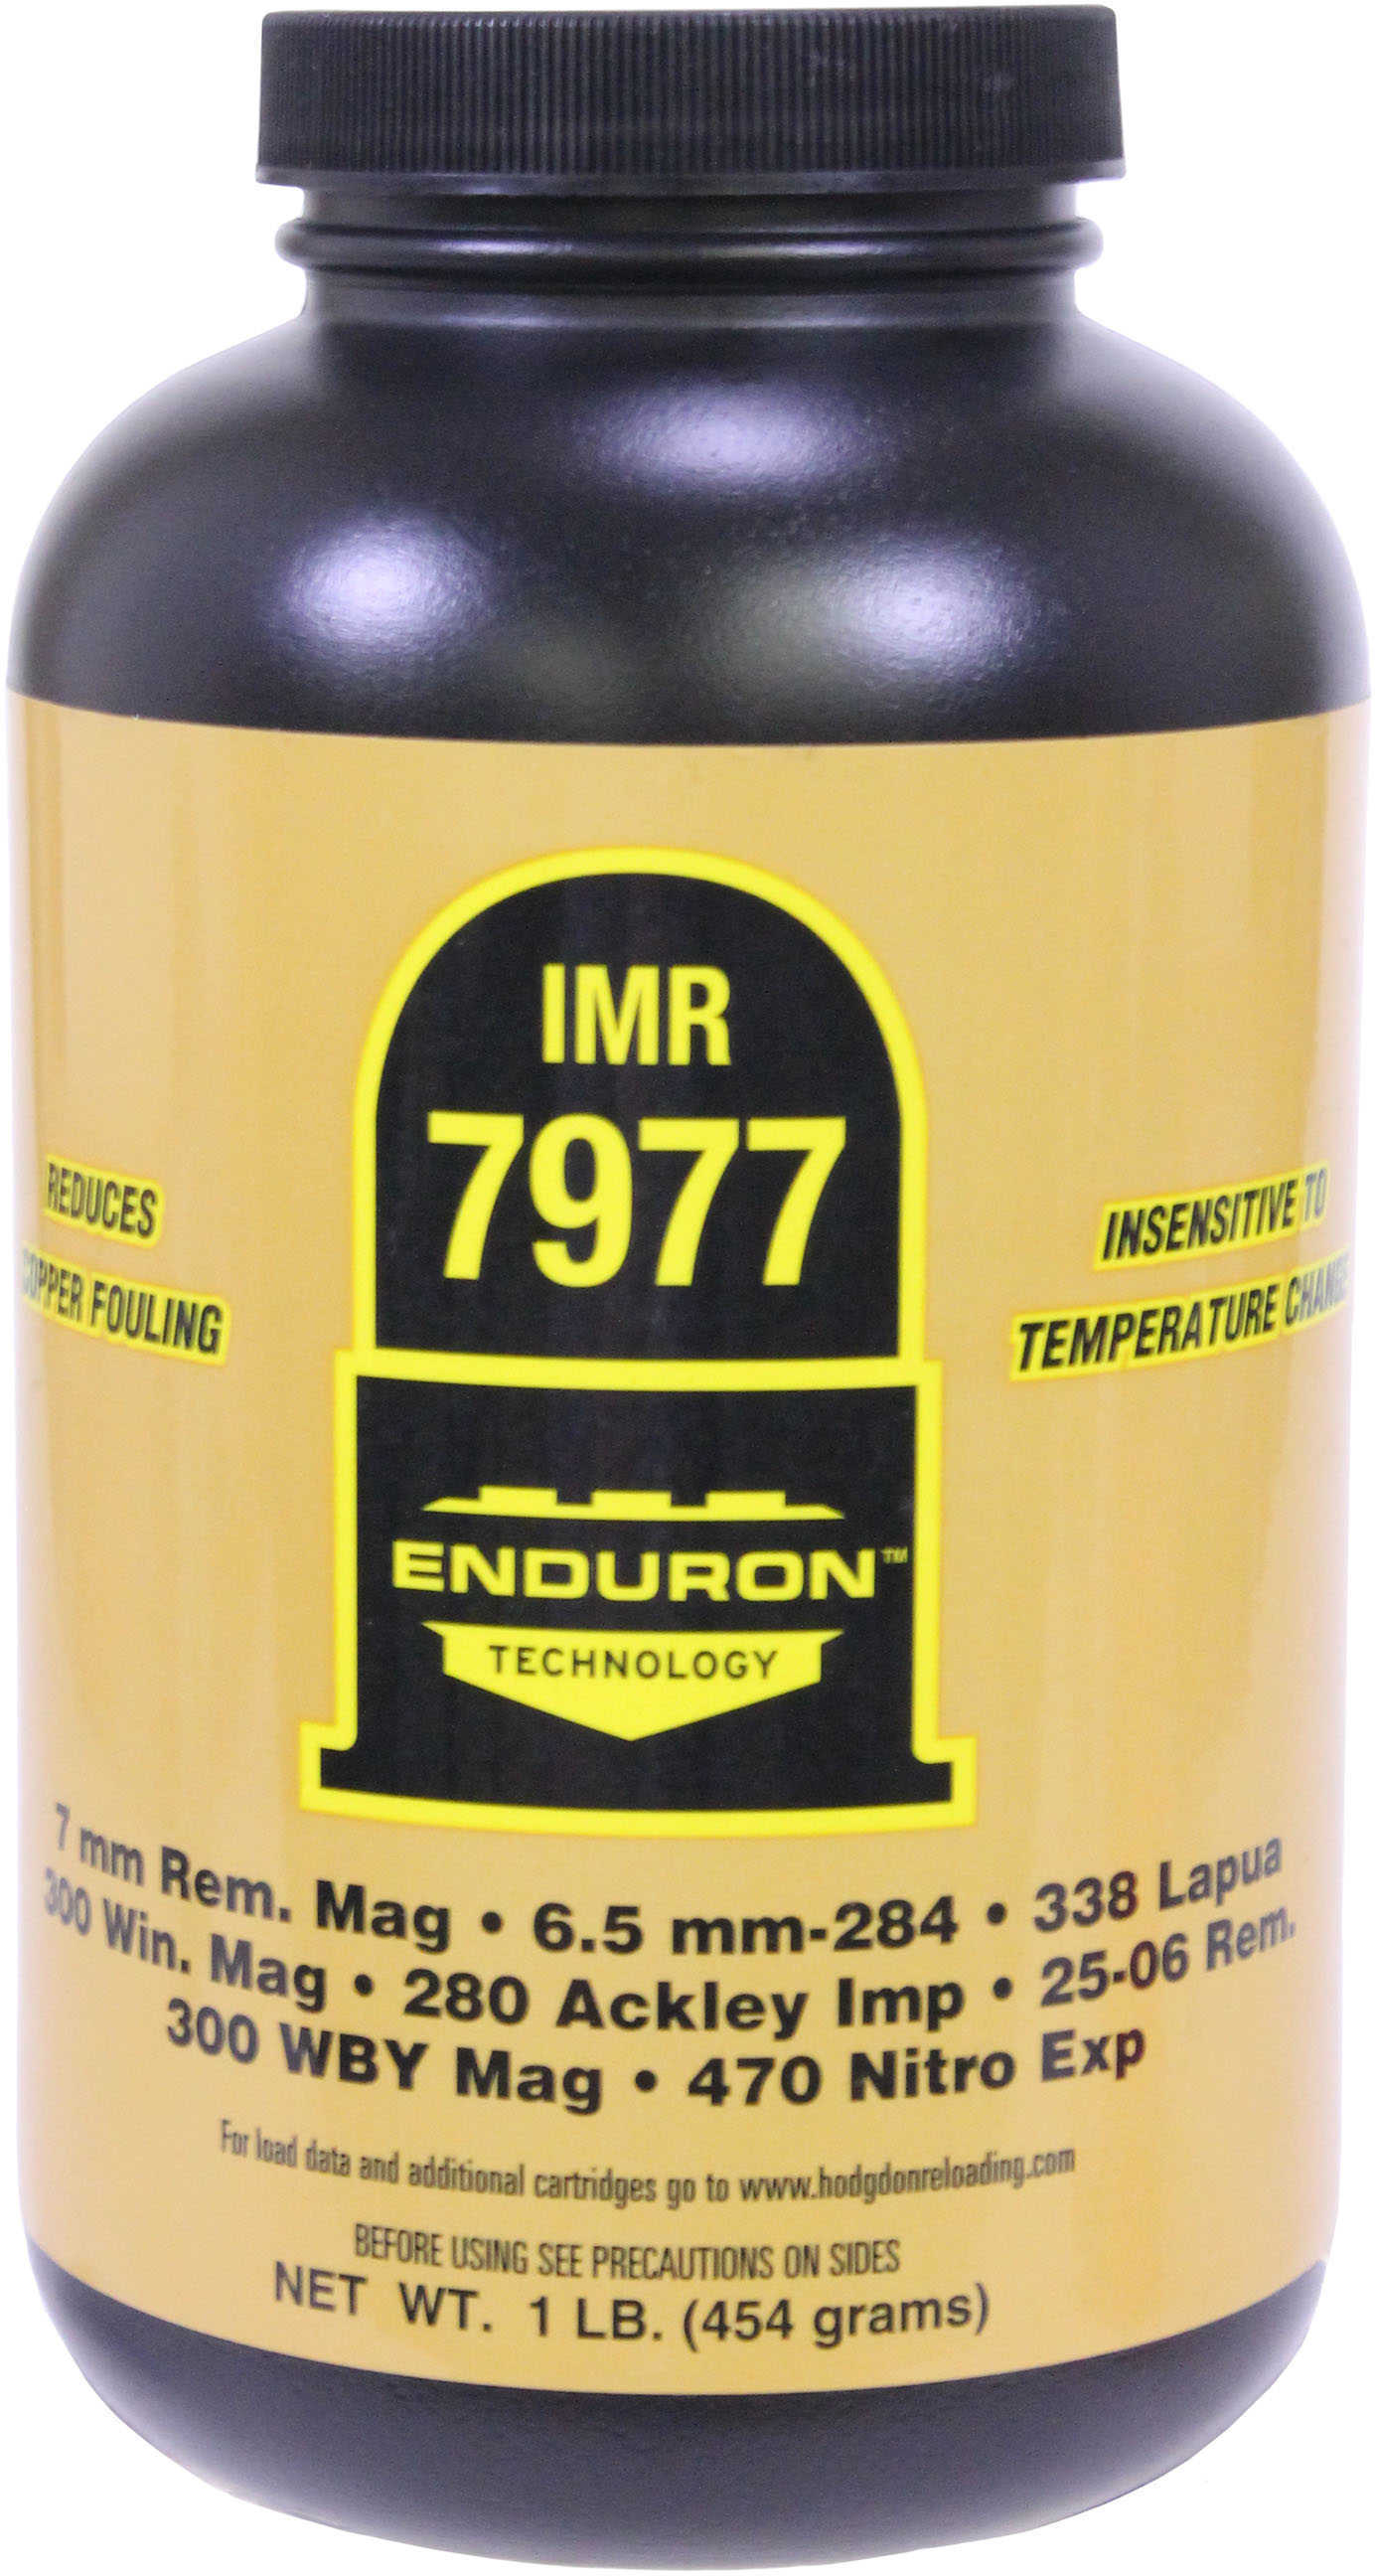 IMR 7977 with ENDURON Technology Smokeless Powder 1 Lb